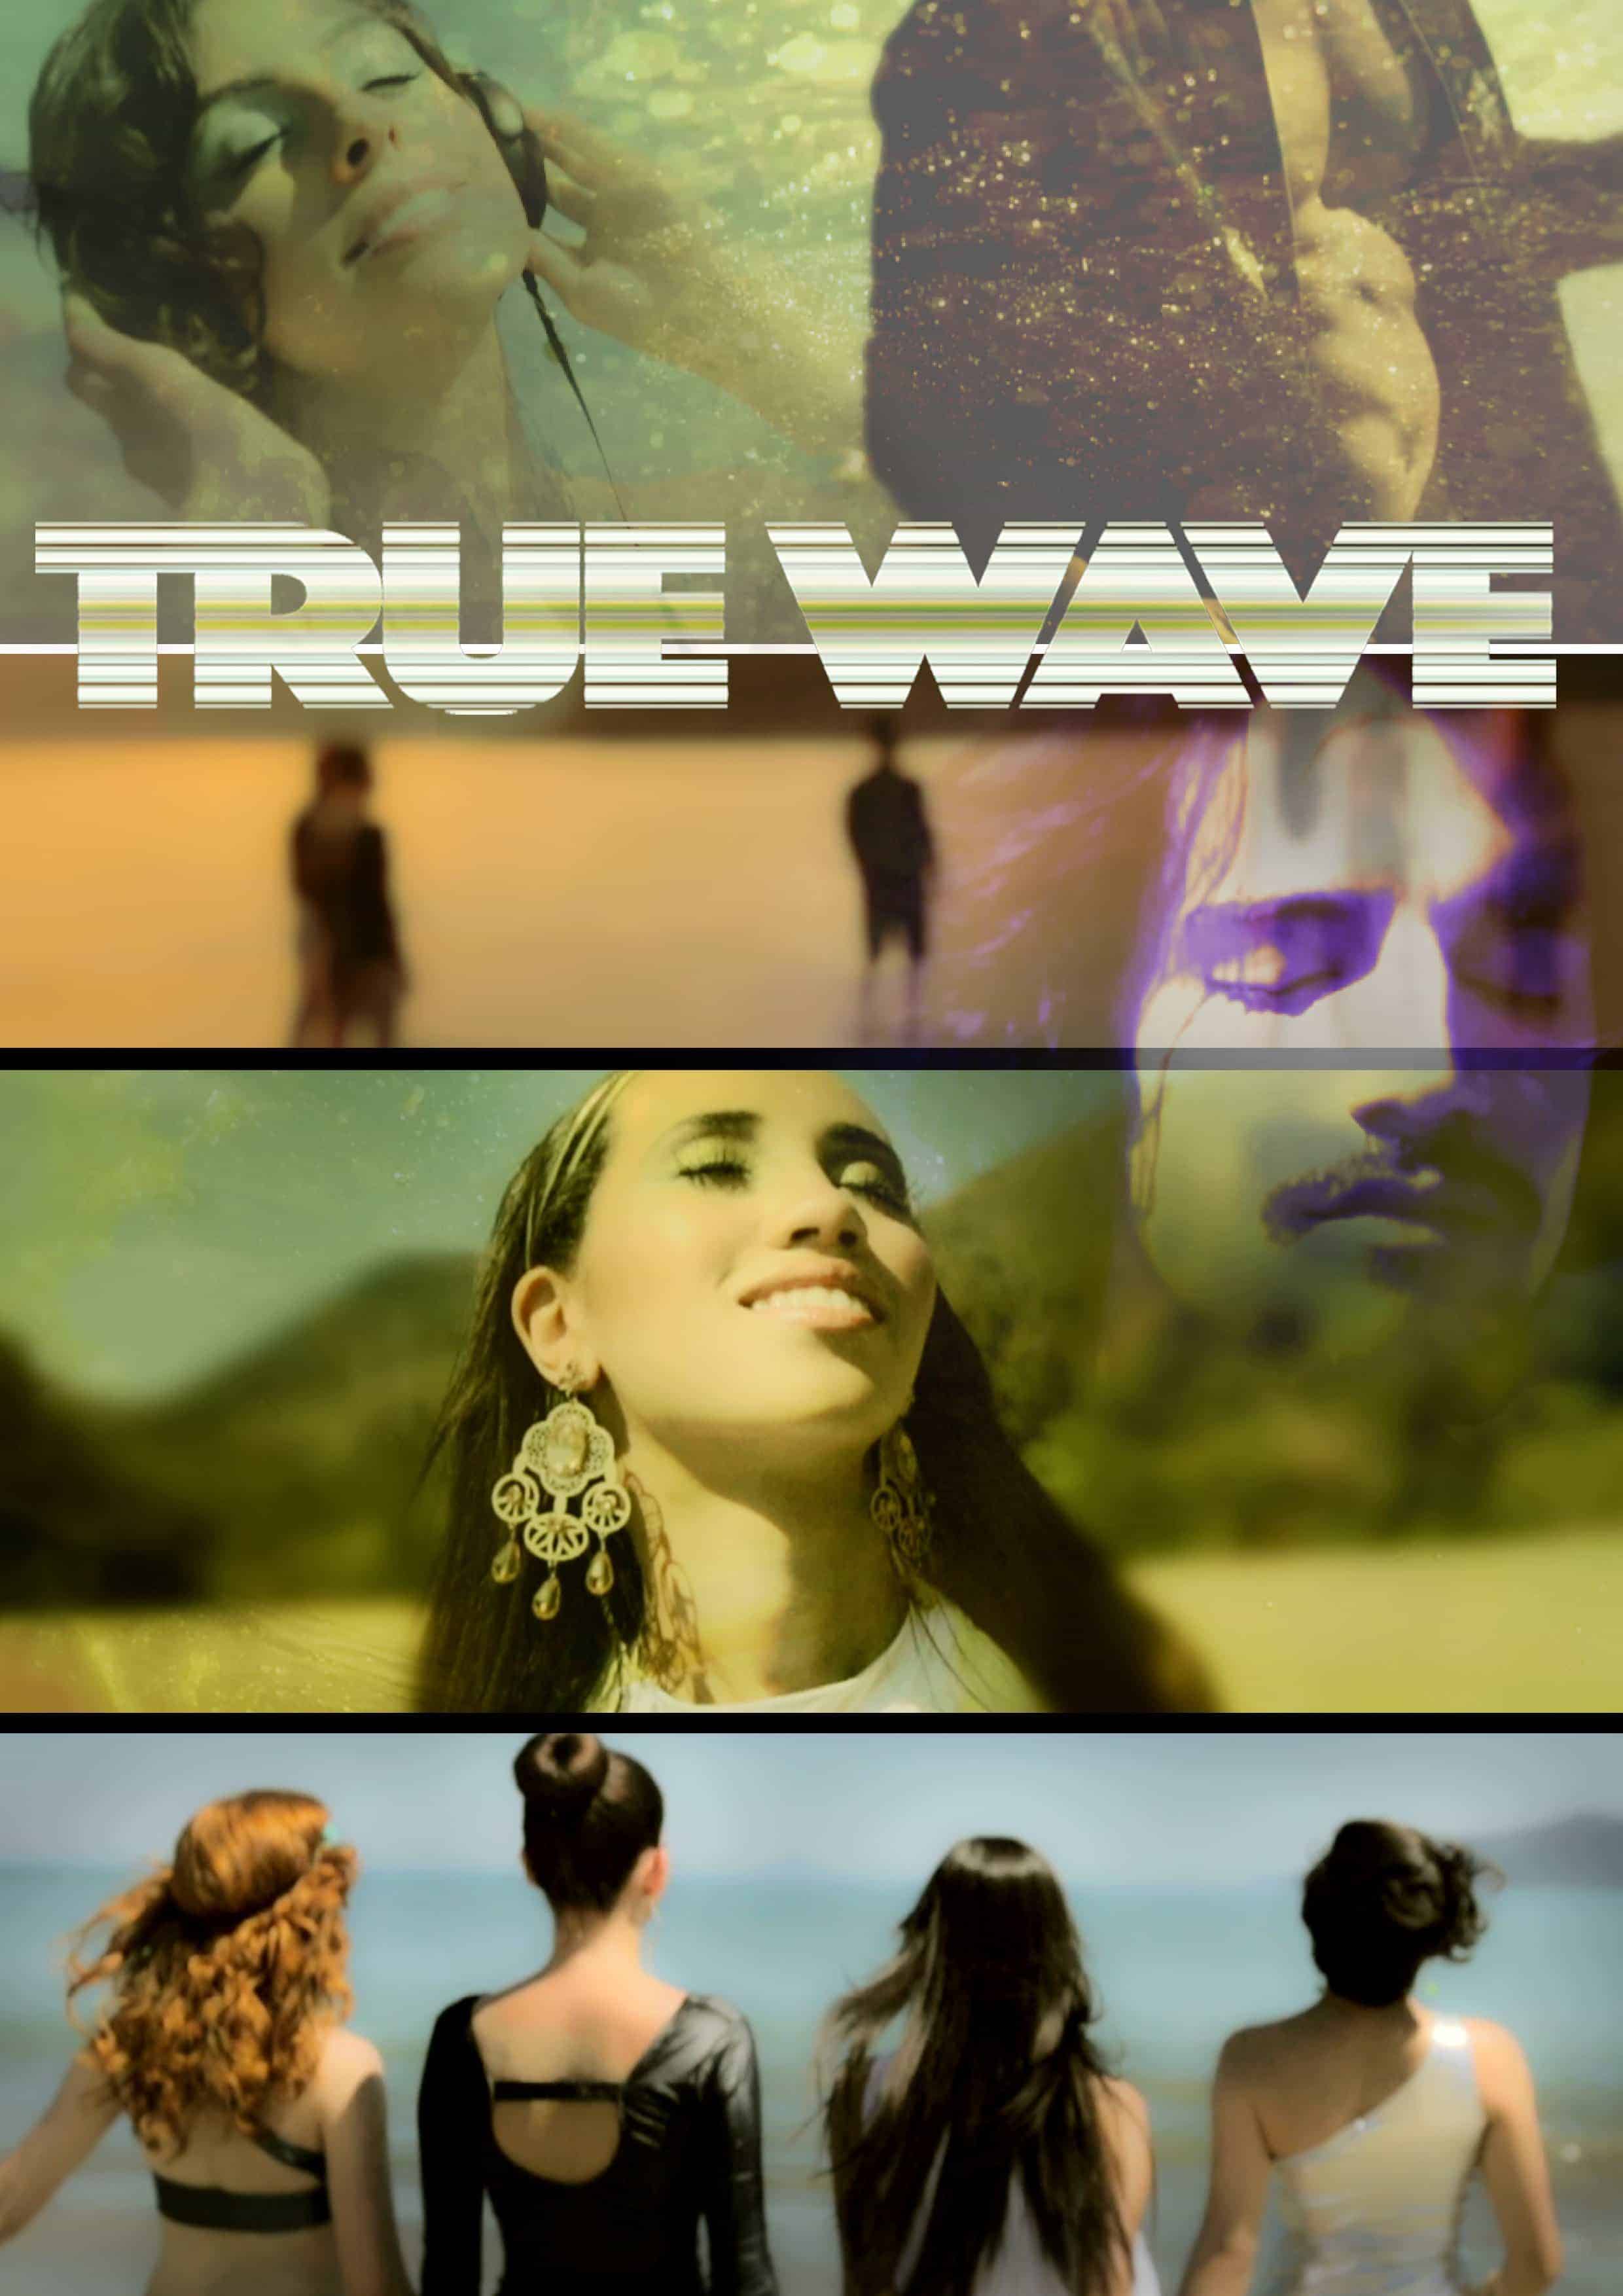 True Wave*